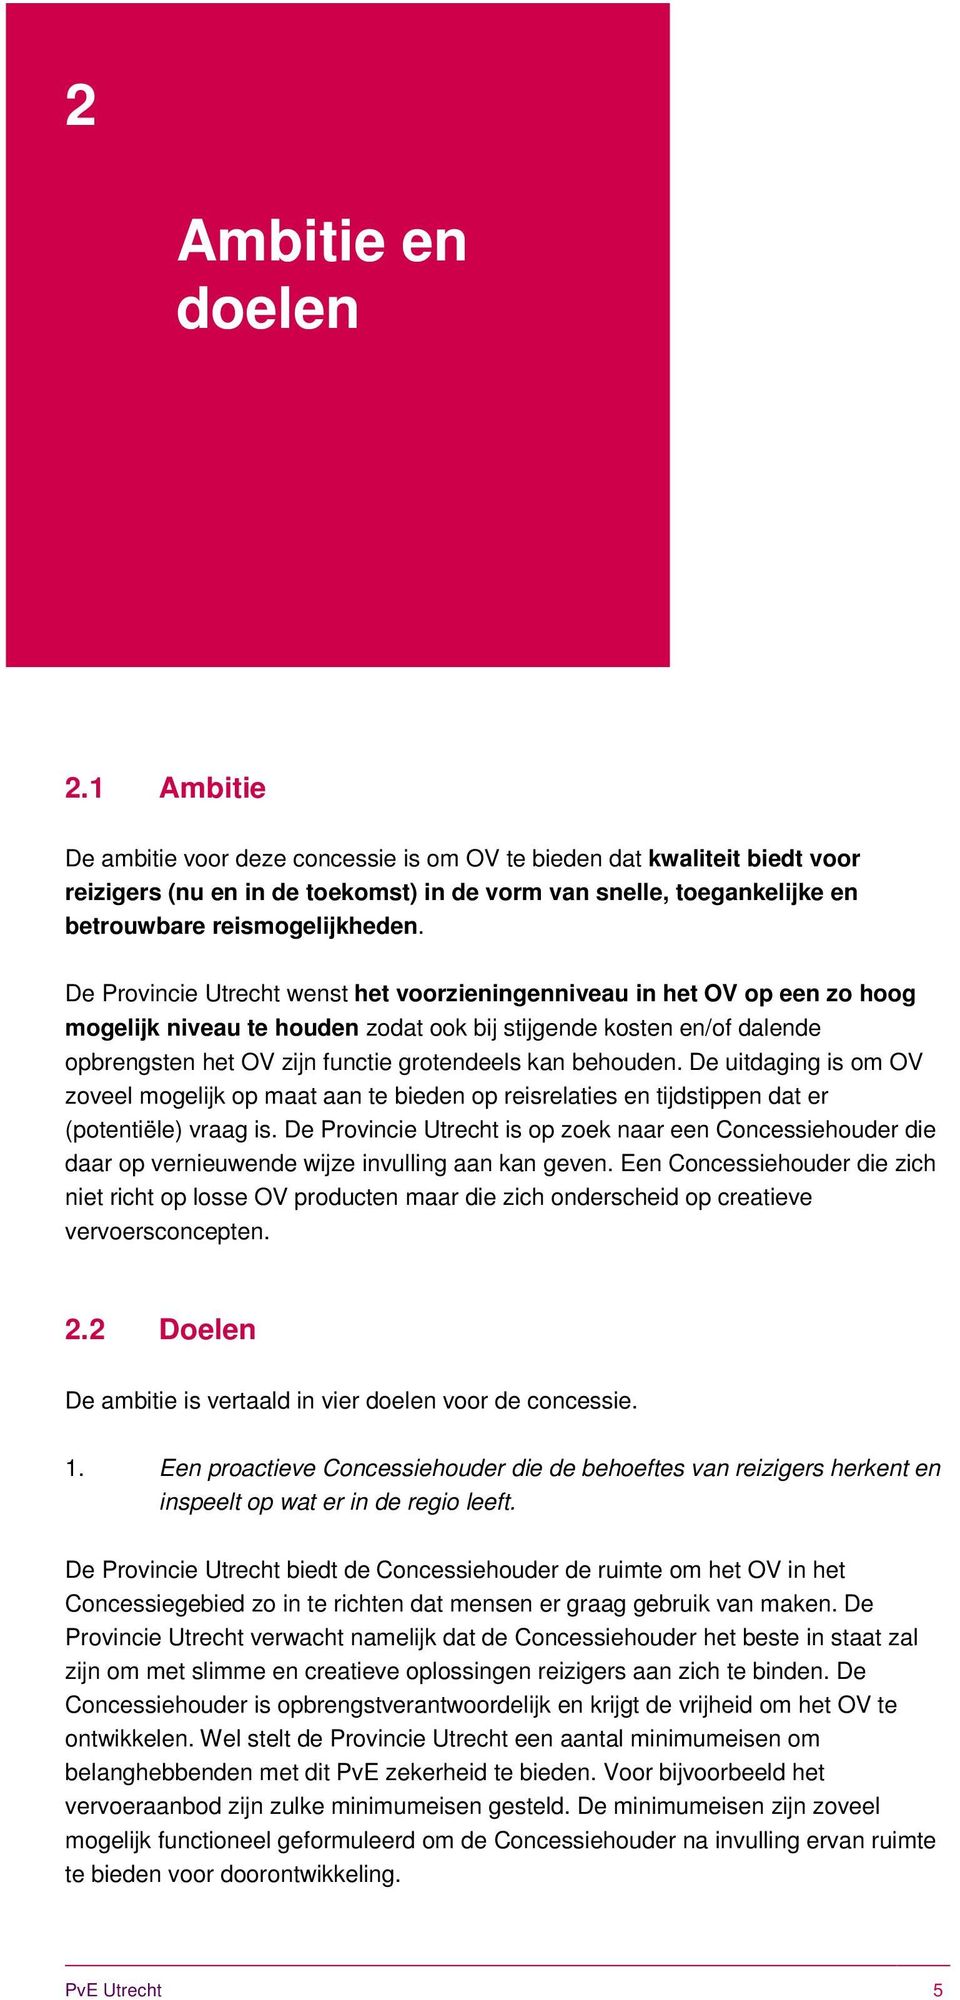 De Provincie Utrecht wenst het voorzieningenniveau in het OV op een zo hoog mogelijk niveau te houden zodat ook bij stijgende kosten en/of dalende opbrengsten het OV zijn functie grotendeels kan